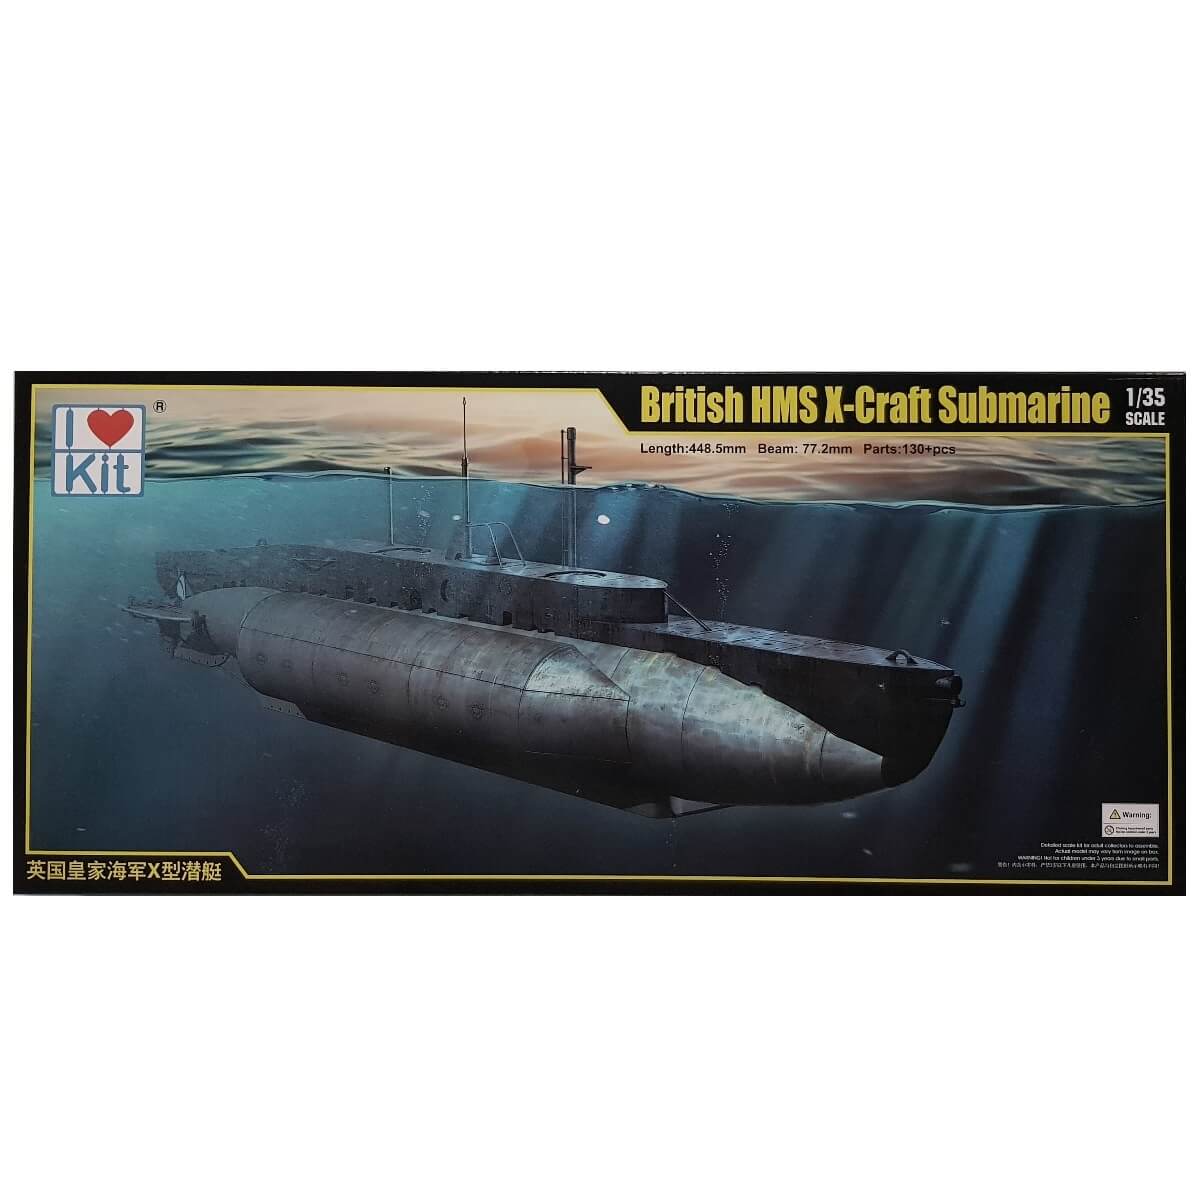 1:35 British HMS X-Craft Submarine - I LOVE KIT